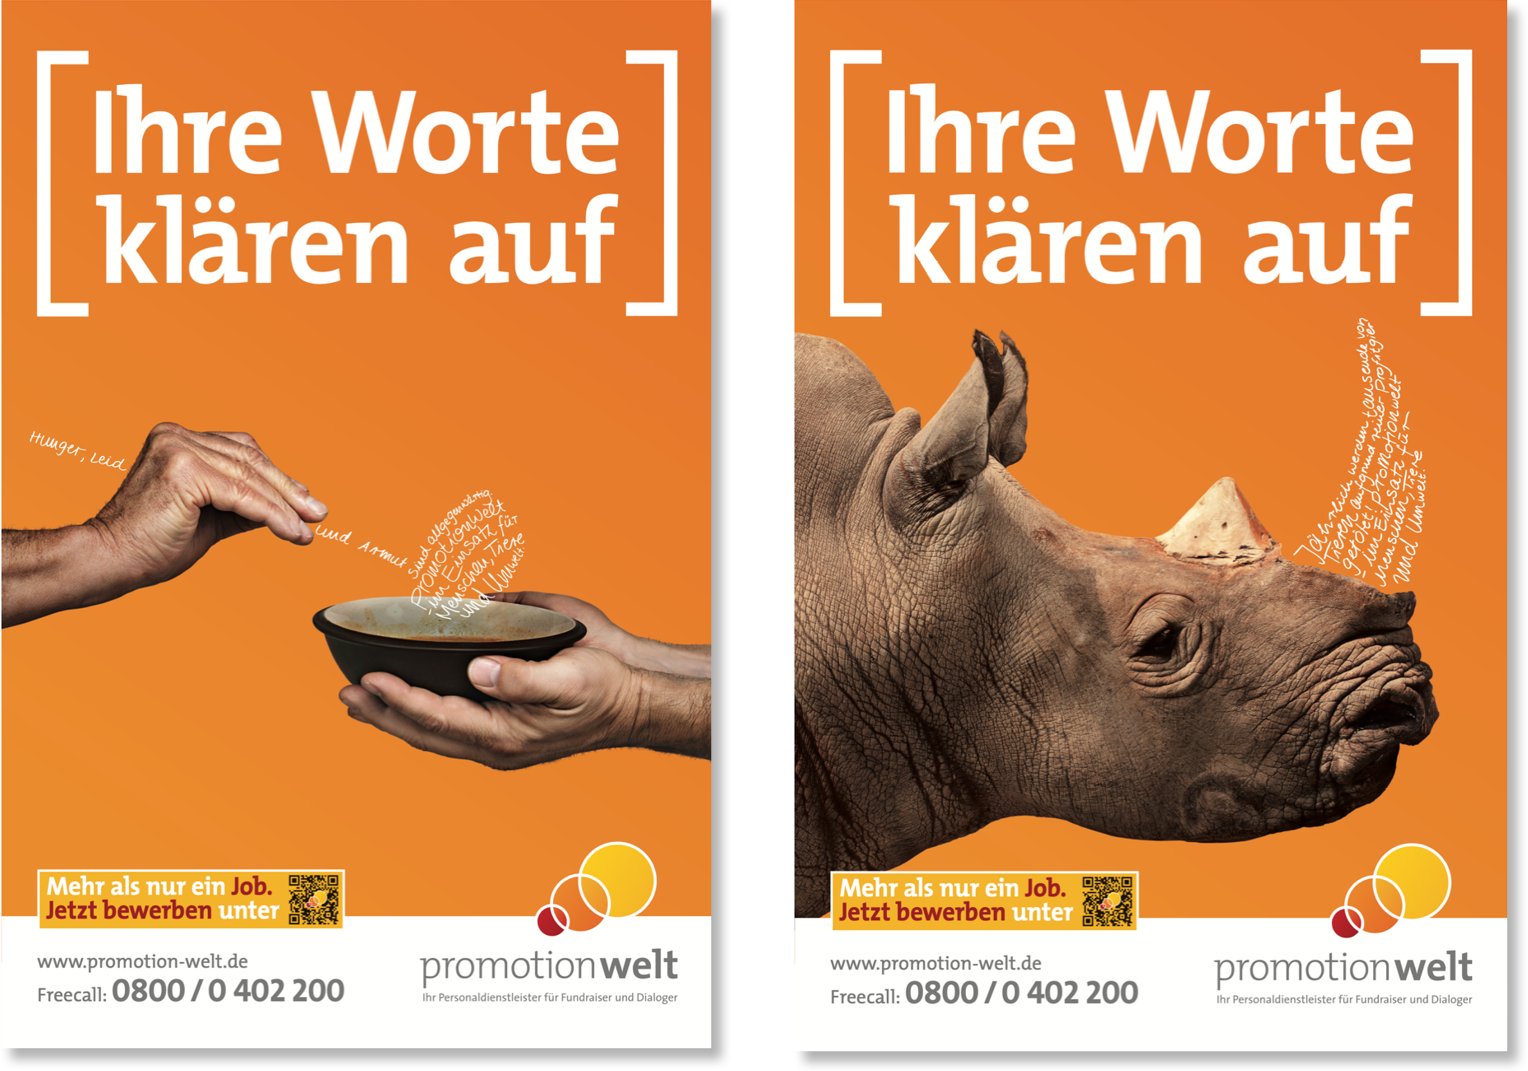 Zwei Poster der Firma Promotionwelt. Oben steht die Überschrift "Ihre Worte klären auf". Das linke Motiv zeigt eine Hand, die mit einer Kelle Suppe in eine Schale kippt. Das rechte Motiv zeigt ein Nashorn im Profil, dessen Horn entfernt wurde. 